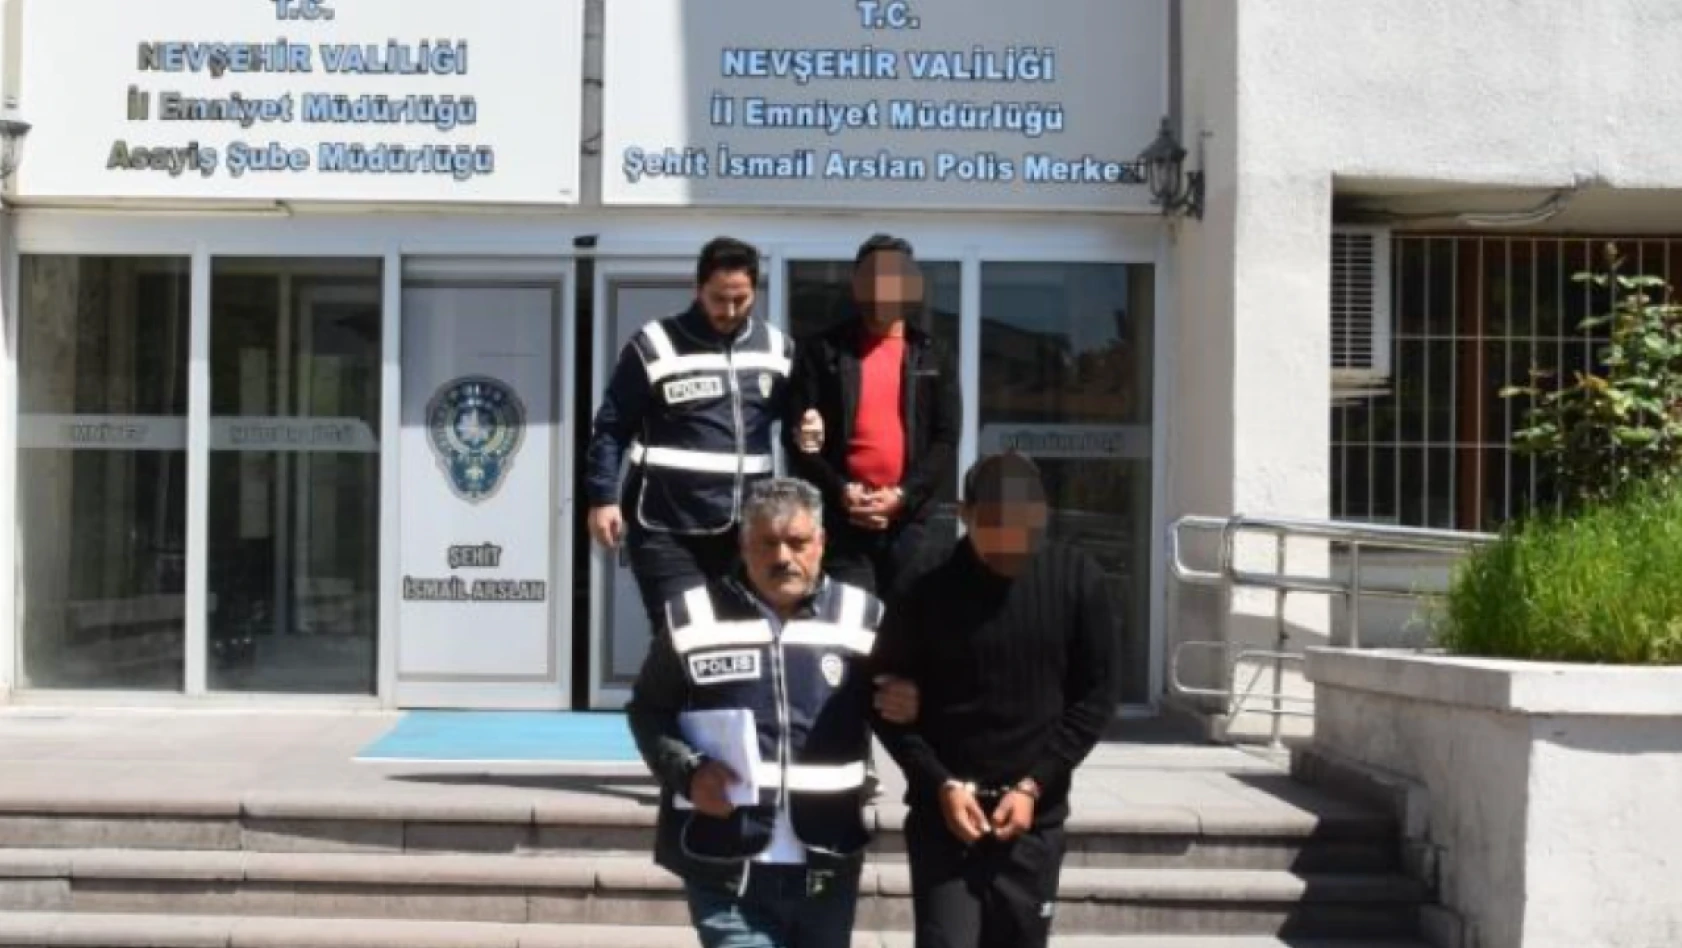 Nevşehir'de sahte polisler yakayı ele verdi!